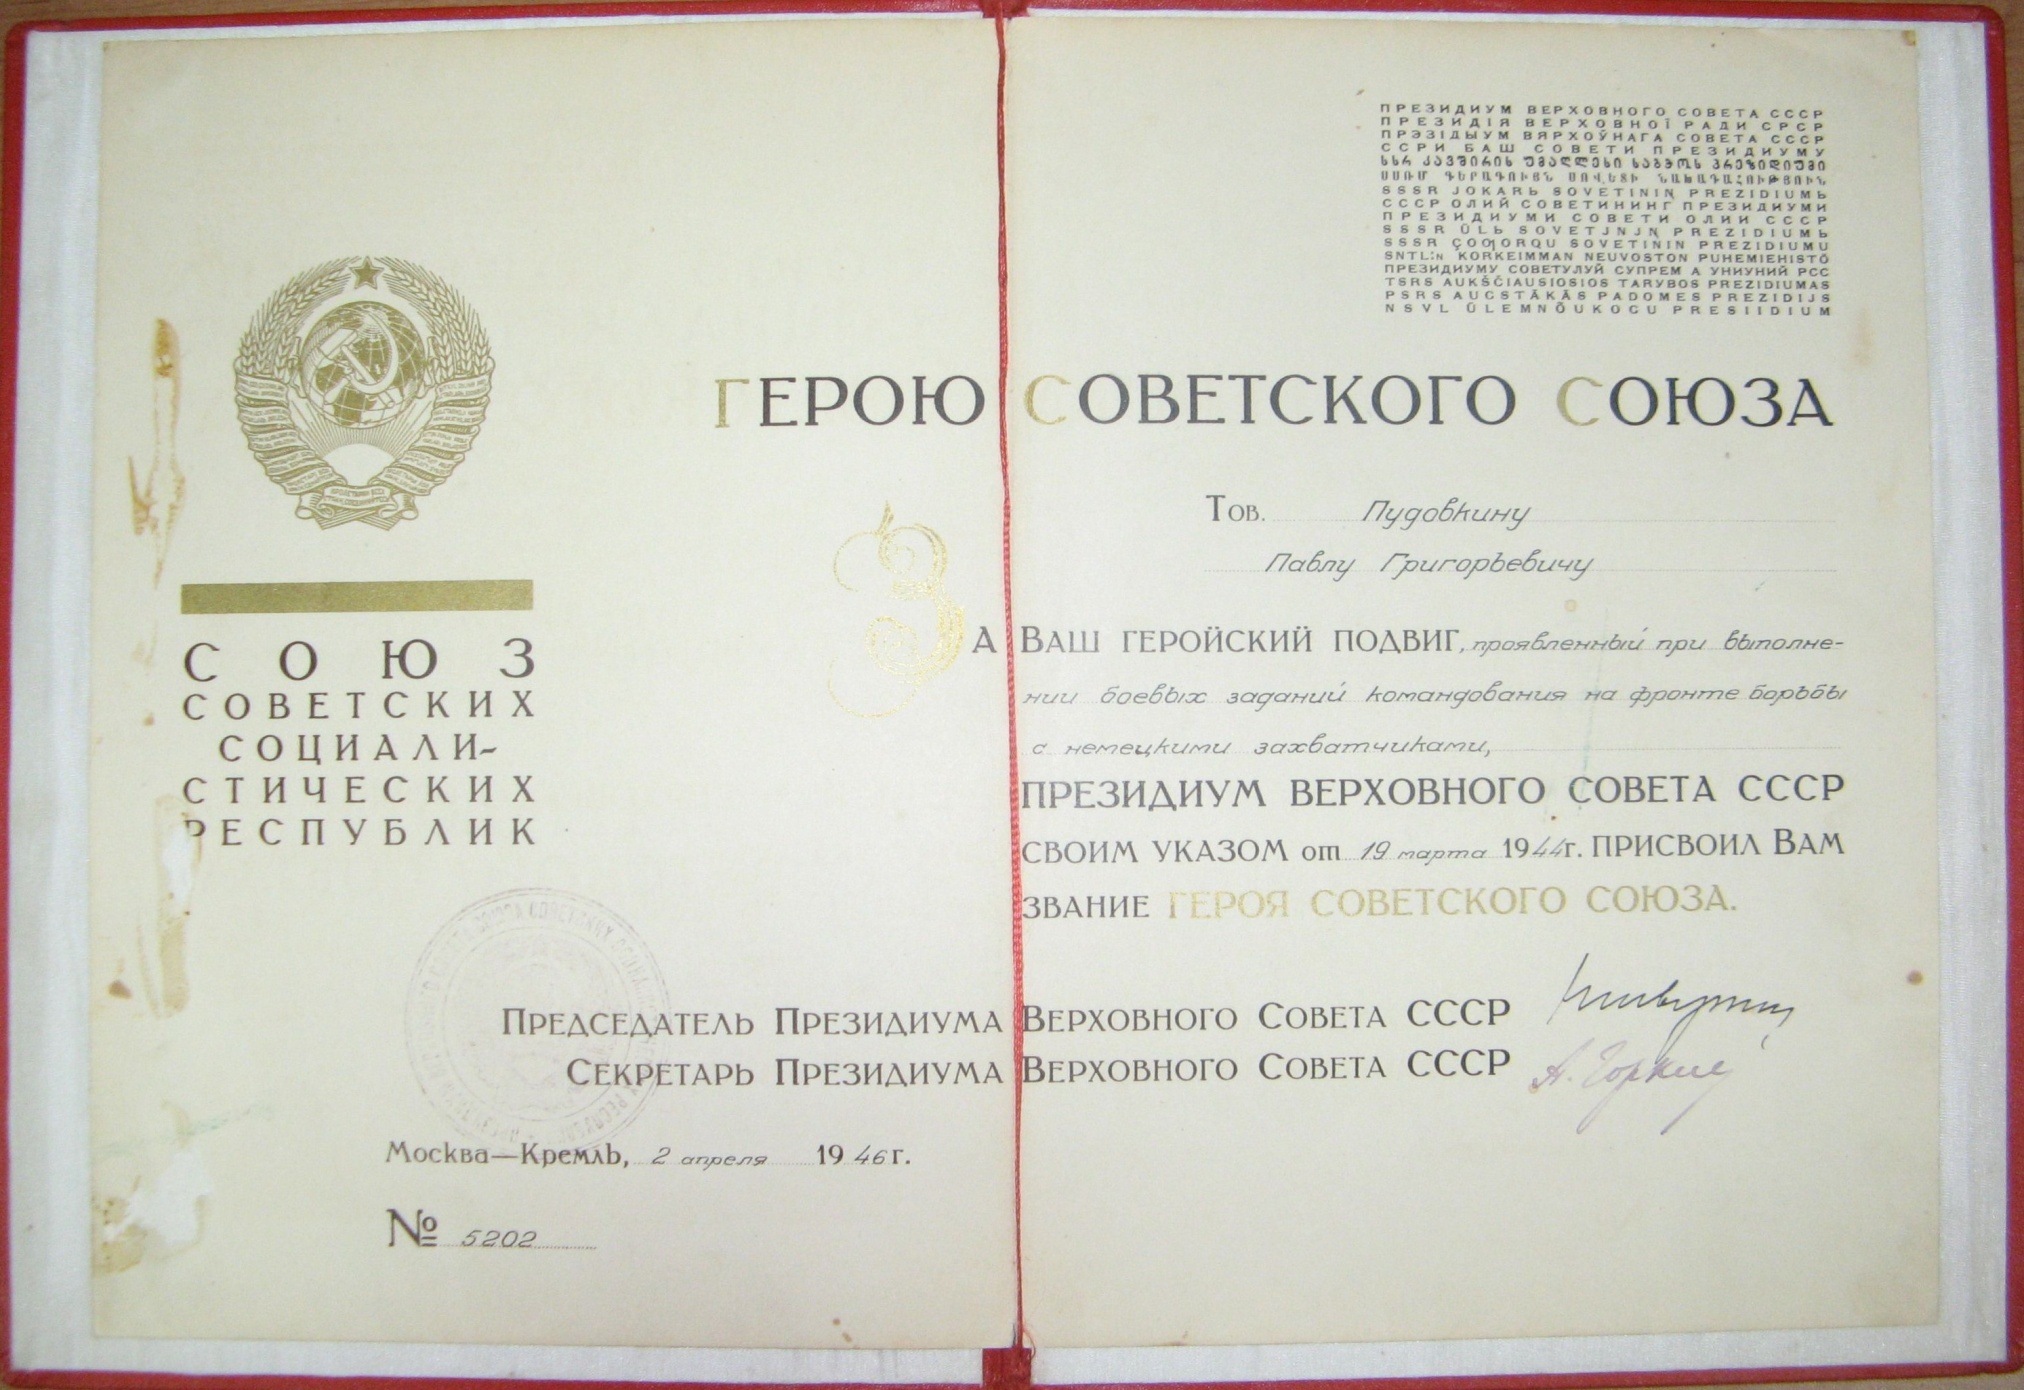 Грамота о присвоении звания Героя Советского Союза Пудовкину П.Г. 2 апреля 1946 года.